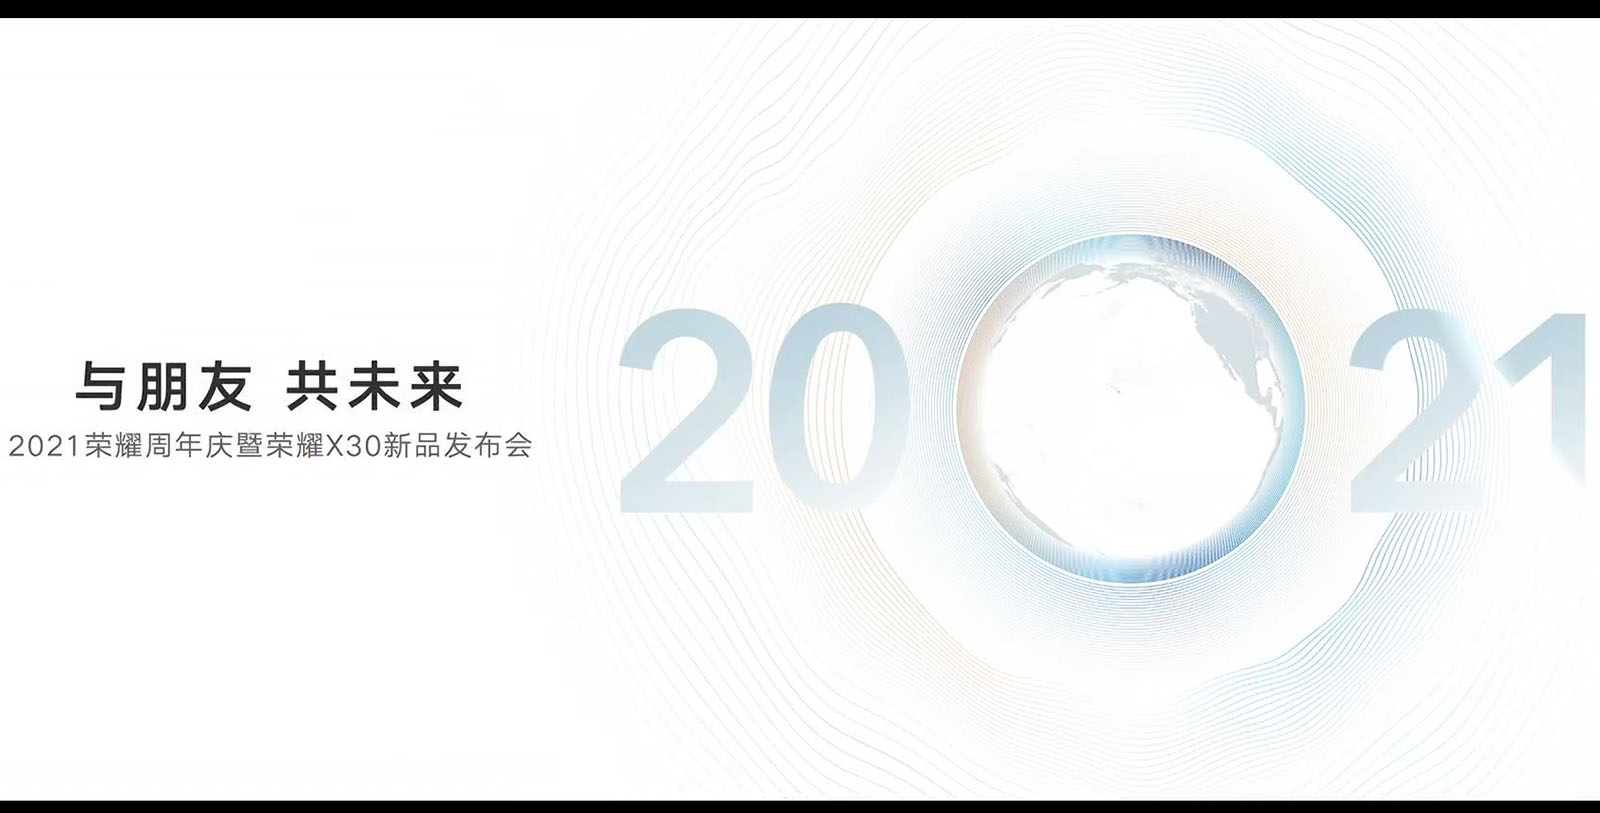 荣耀周年庆暨荣耀X30发布会 另有天玑9000首发